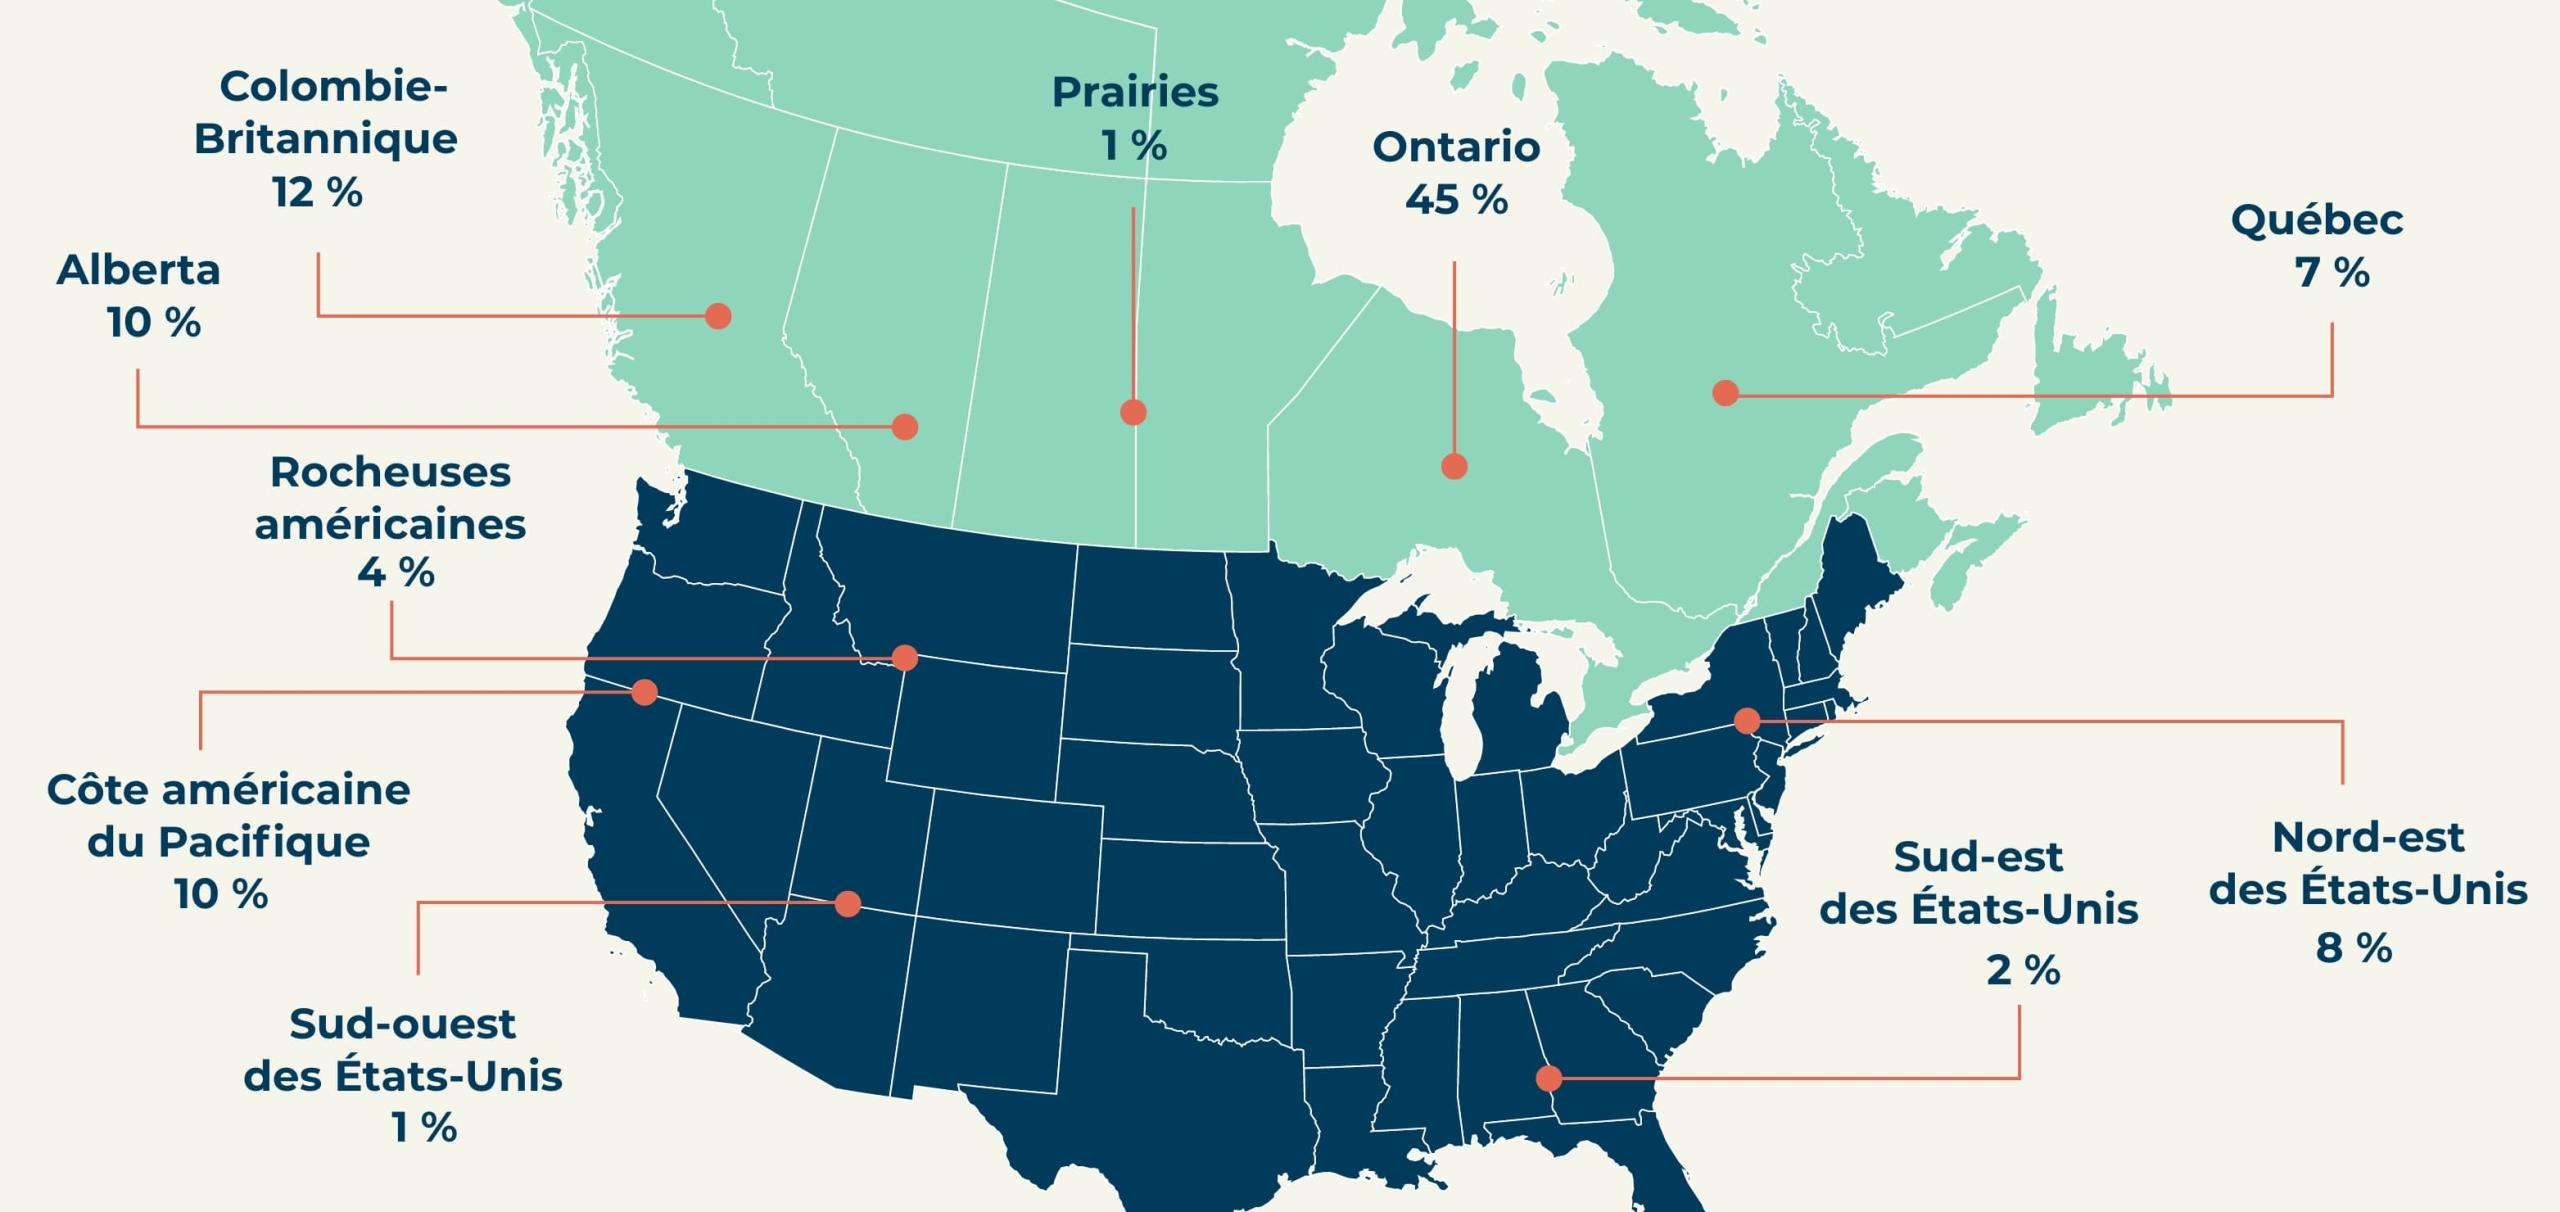 Avoirs par région: Colombie-Britannique 12 %, Alberta 10 %, Prairies 1 %, Ontario 45 %, Québec 7 %, Rocheuses américaines 4 %, Côte américaine du Pacifique 10 %, Sud-ouest des États-Unis 1 %, Nord-est des États-Unis 8 %, Sud-est des États-Unis 2 %